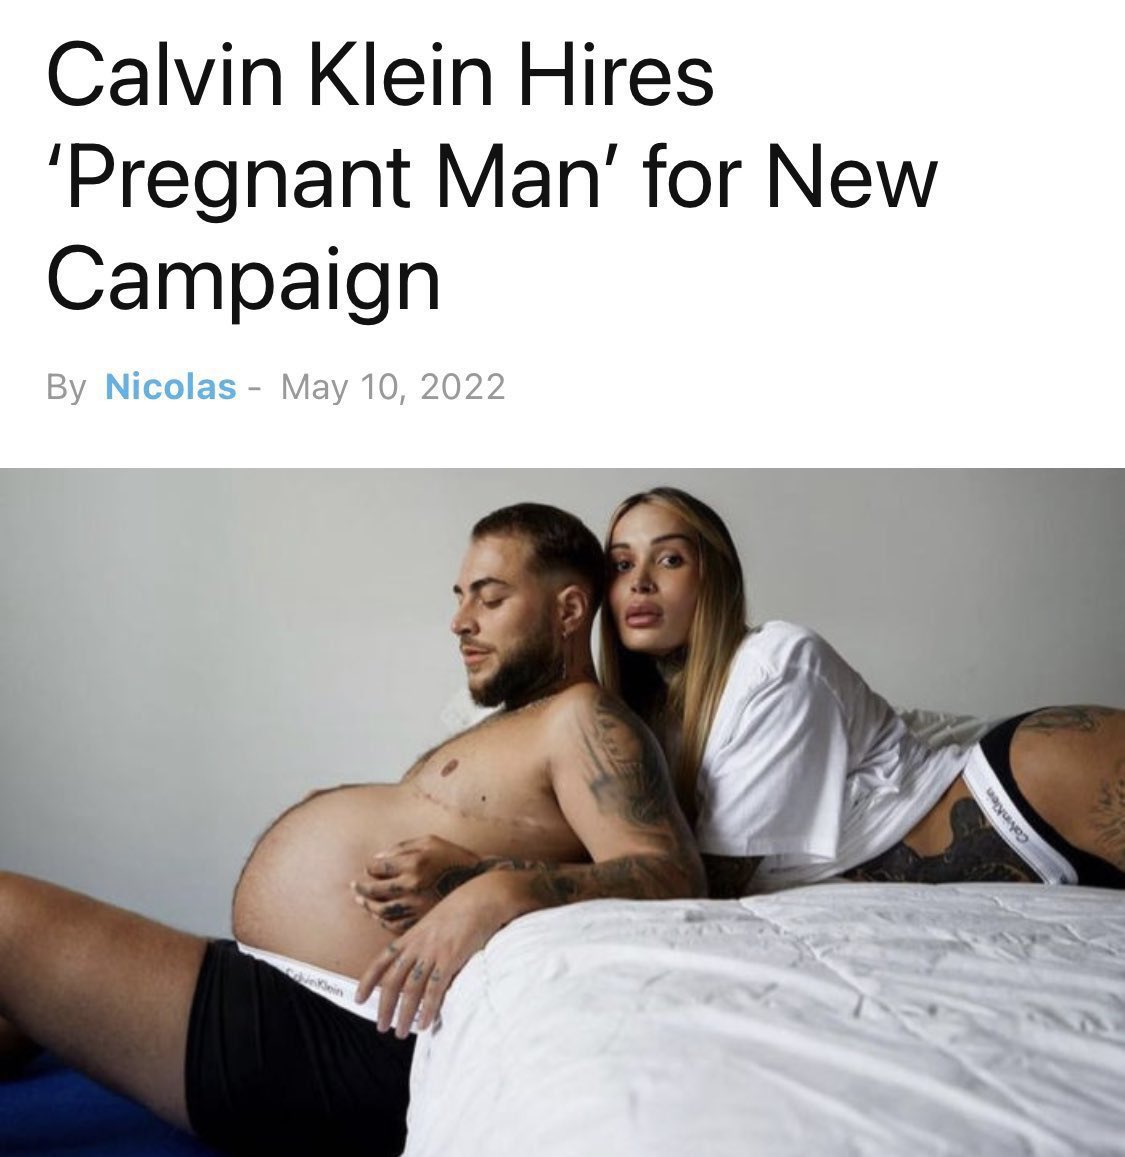 Про мужскую беременность. Беременный мужчина Кельвин Кляйн 2022. Реклама Кальвин Кляйн с трансгендером. Новая реклама Кельвин Кляйн с беременным мужчиной. Реклама Кельвин Кляйн с беременным мужчиной.